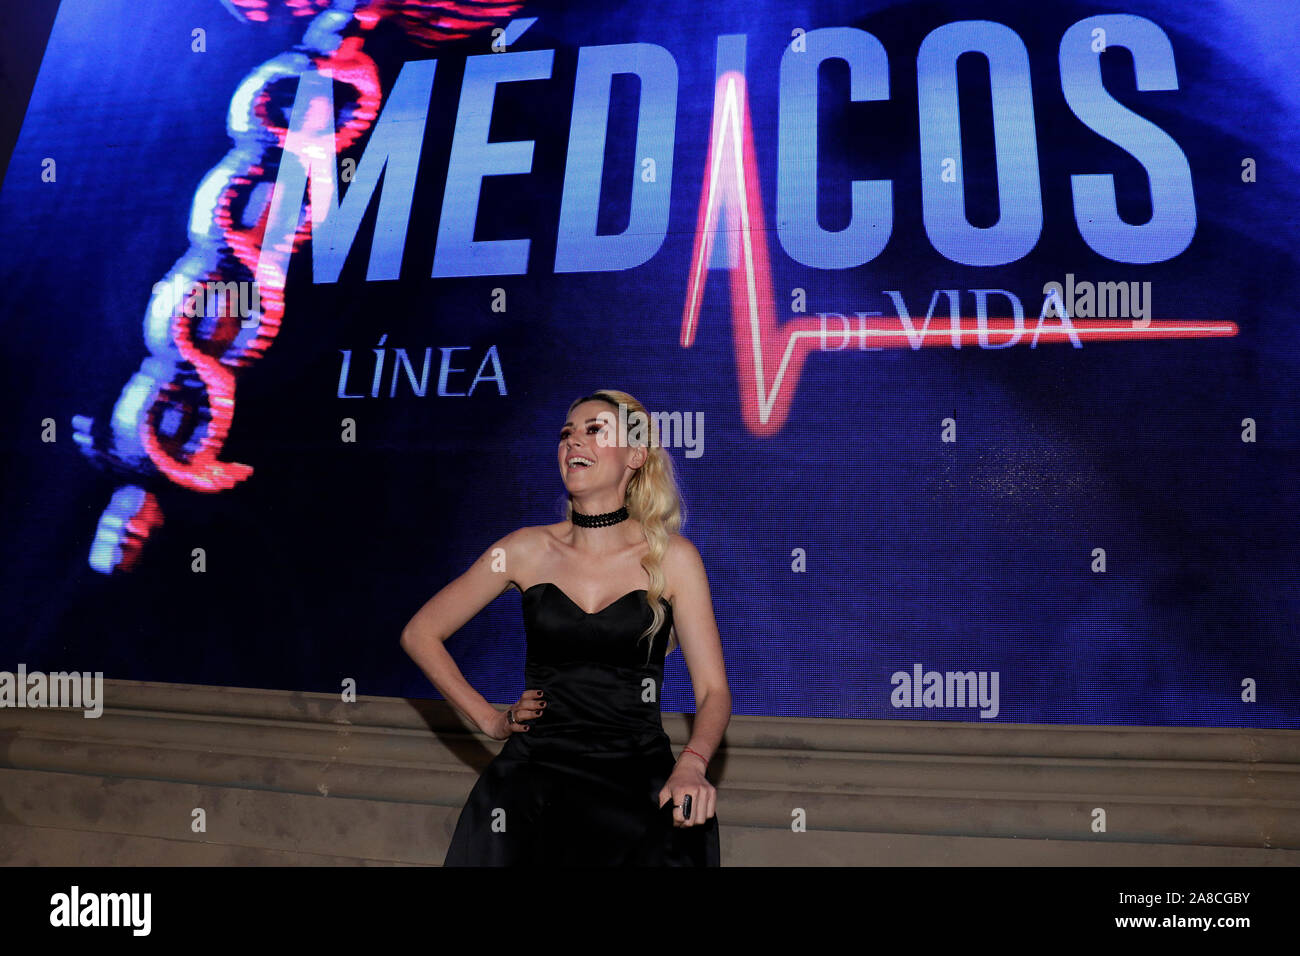 Presentación de la telenovela “Médicos Línea de Vida”, producción de José Alberto ‘El Güero’ Castro que se estrena en la televisión mexicana. Stock Photo